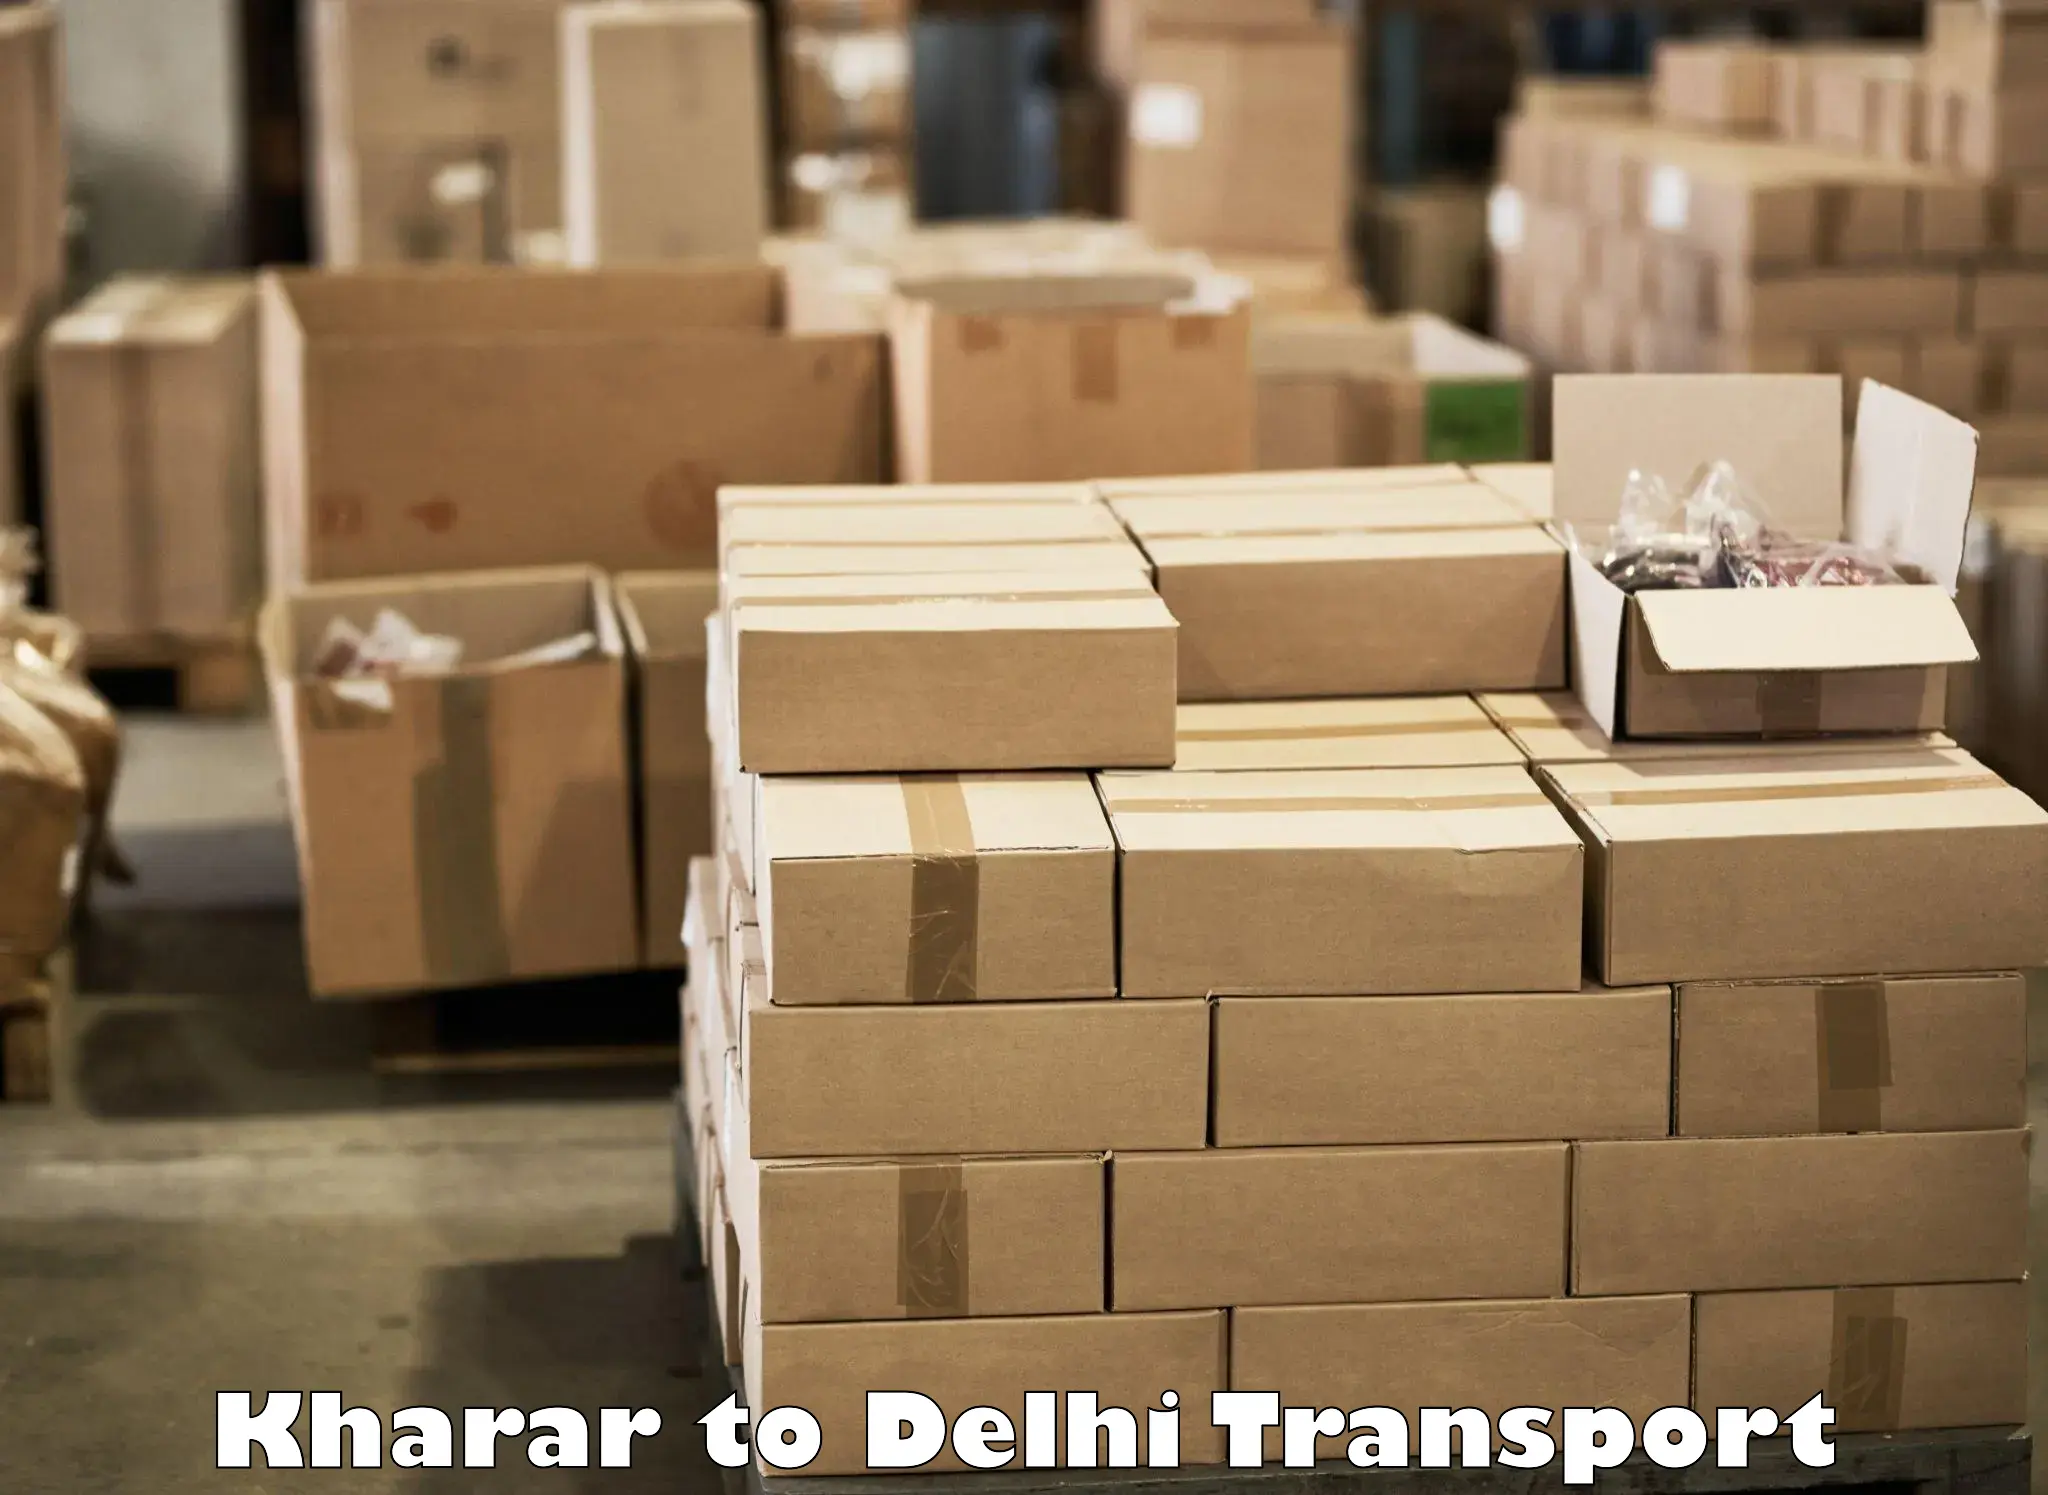 Express transport services Kharar to East Delhi